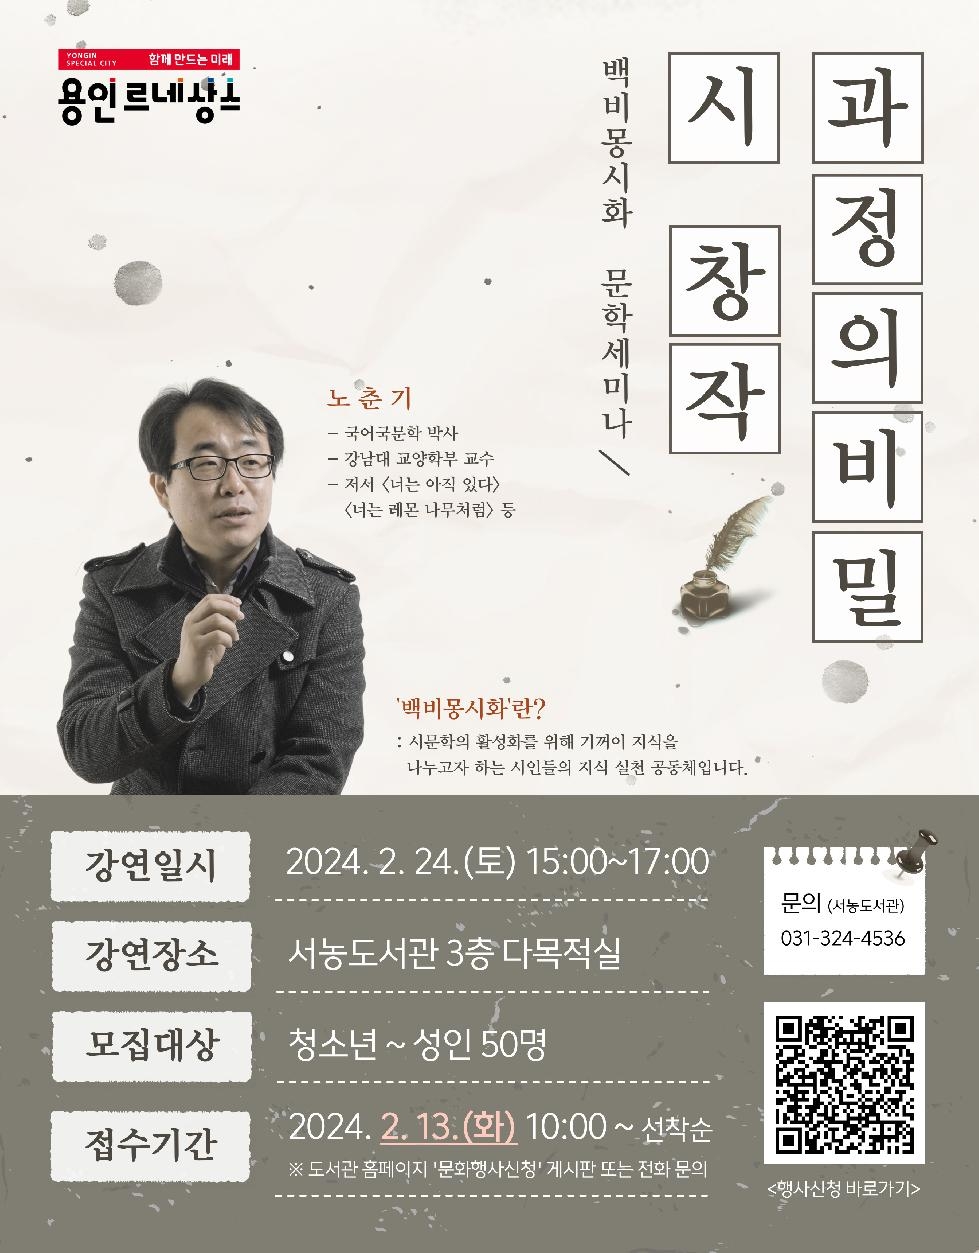 용인시 서농도서관, ‘시 창작 과정의 비밀’ 세미나 개최